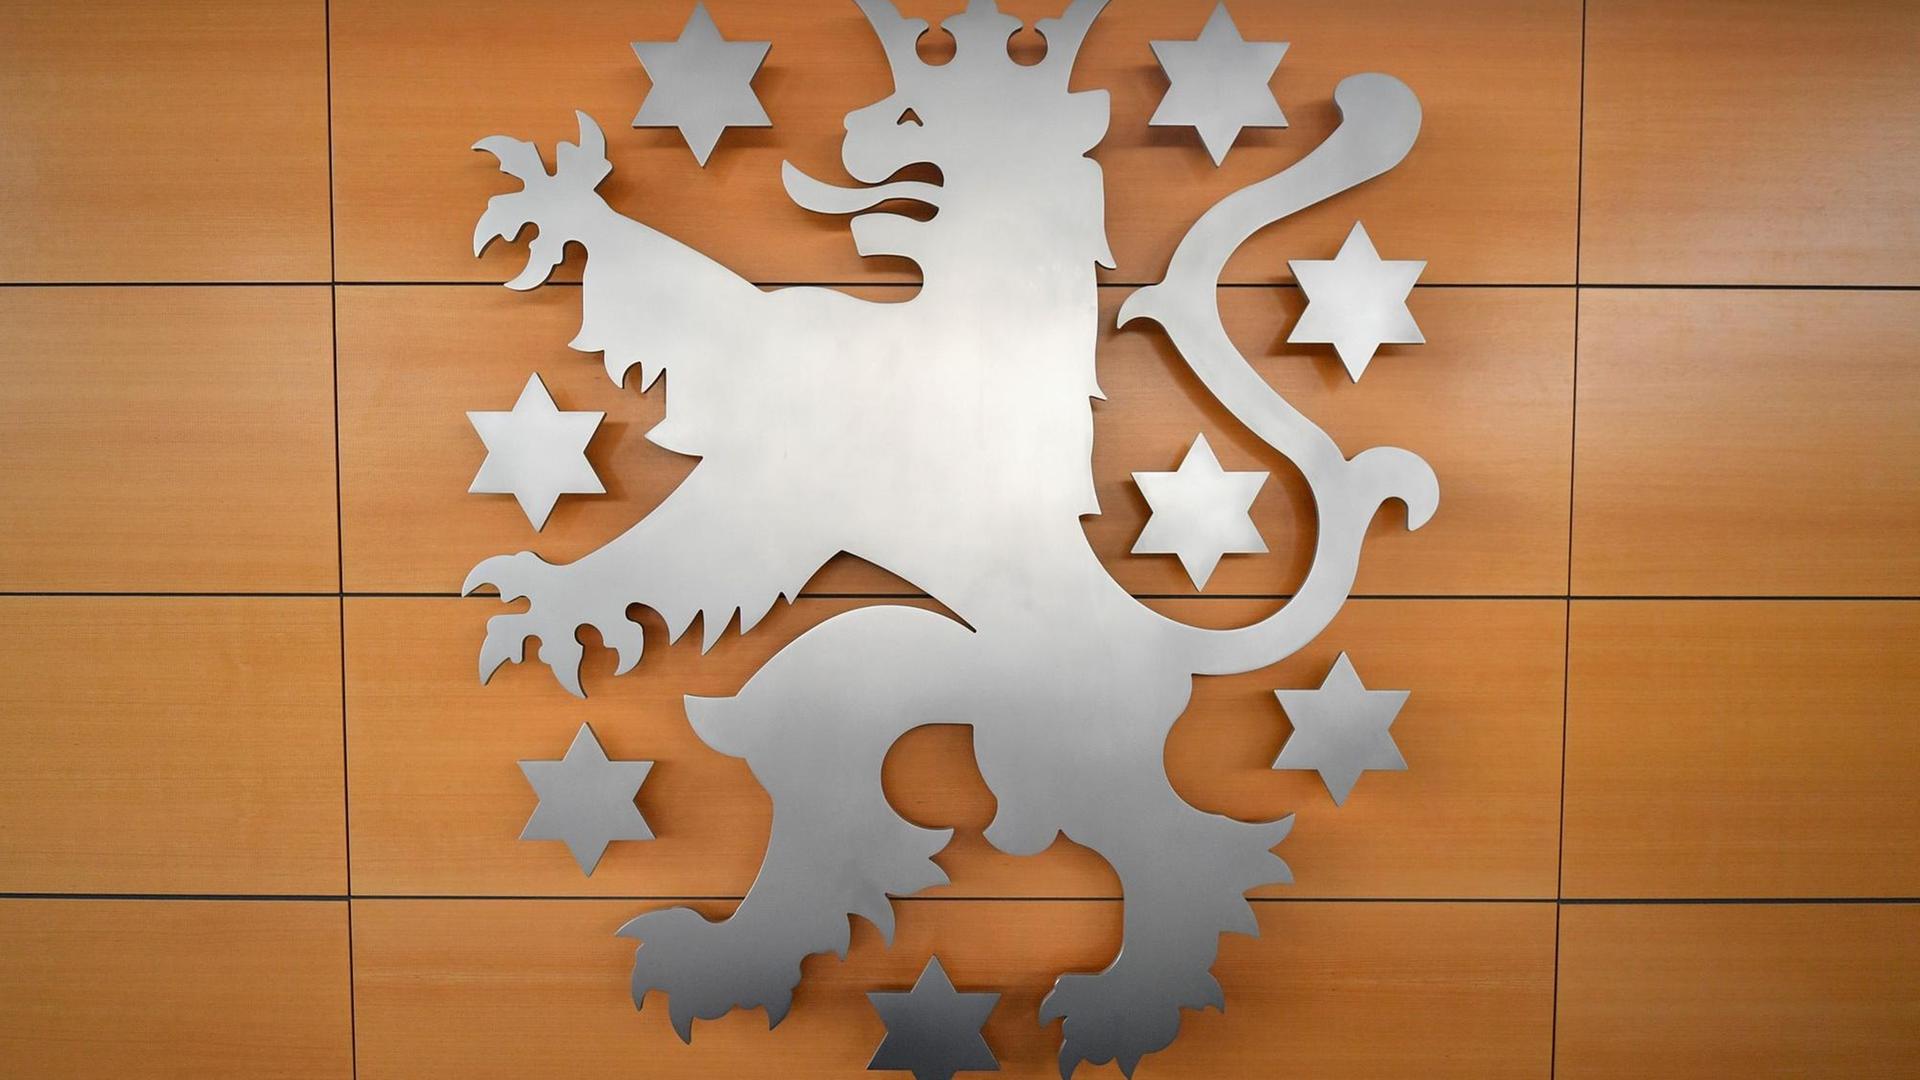 Das silberne Wappen an einer braungetäfelten Wand zeigt einen gekrönten Löwen, um ihn herum mehrere Sterne.